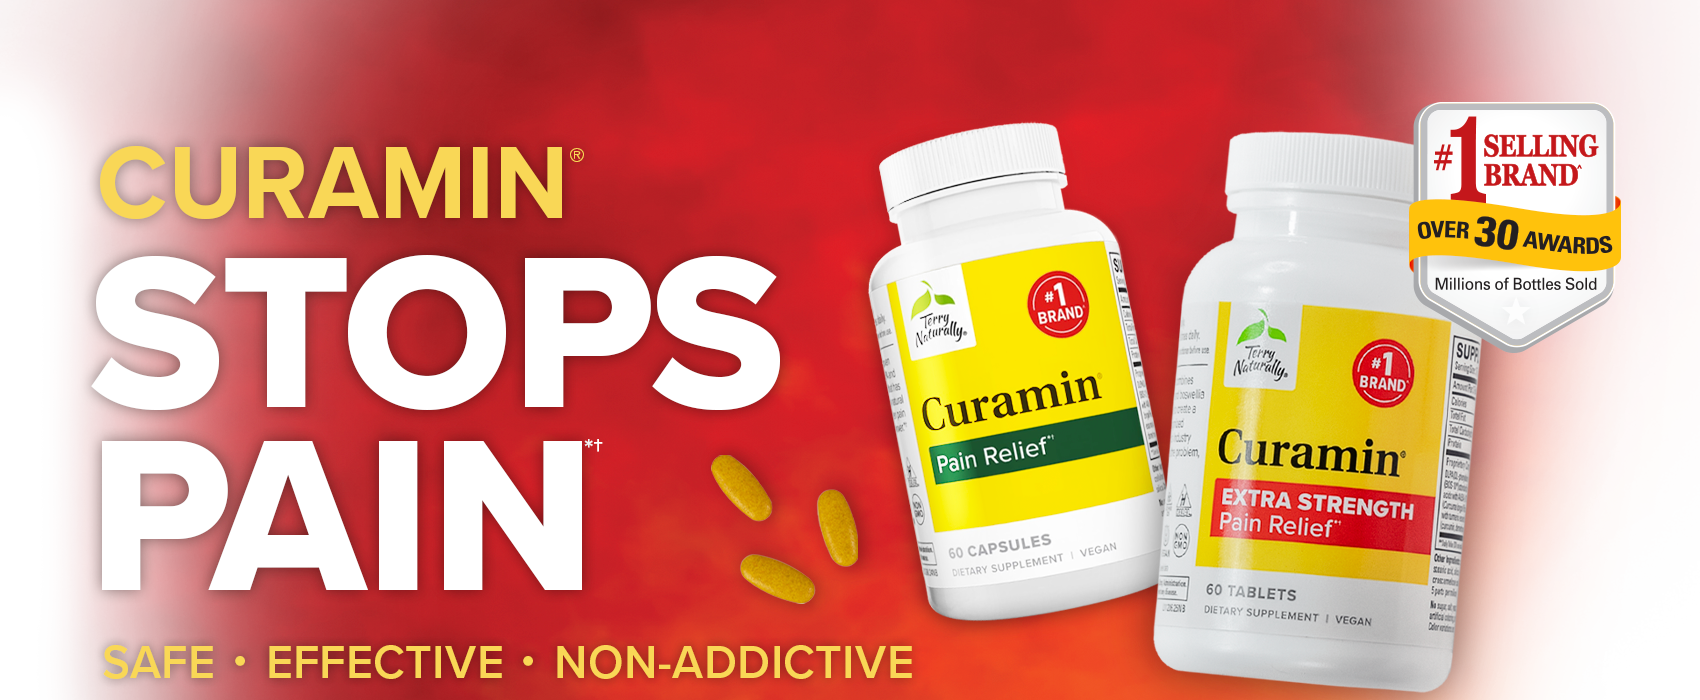 Curamin® STOPS PAIN*† | Safe • Effective • Non-Addictive